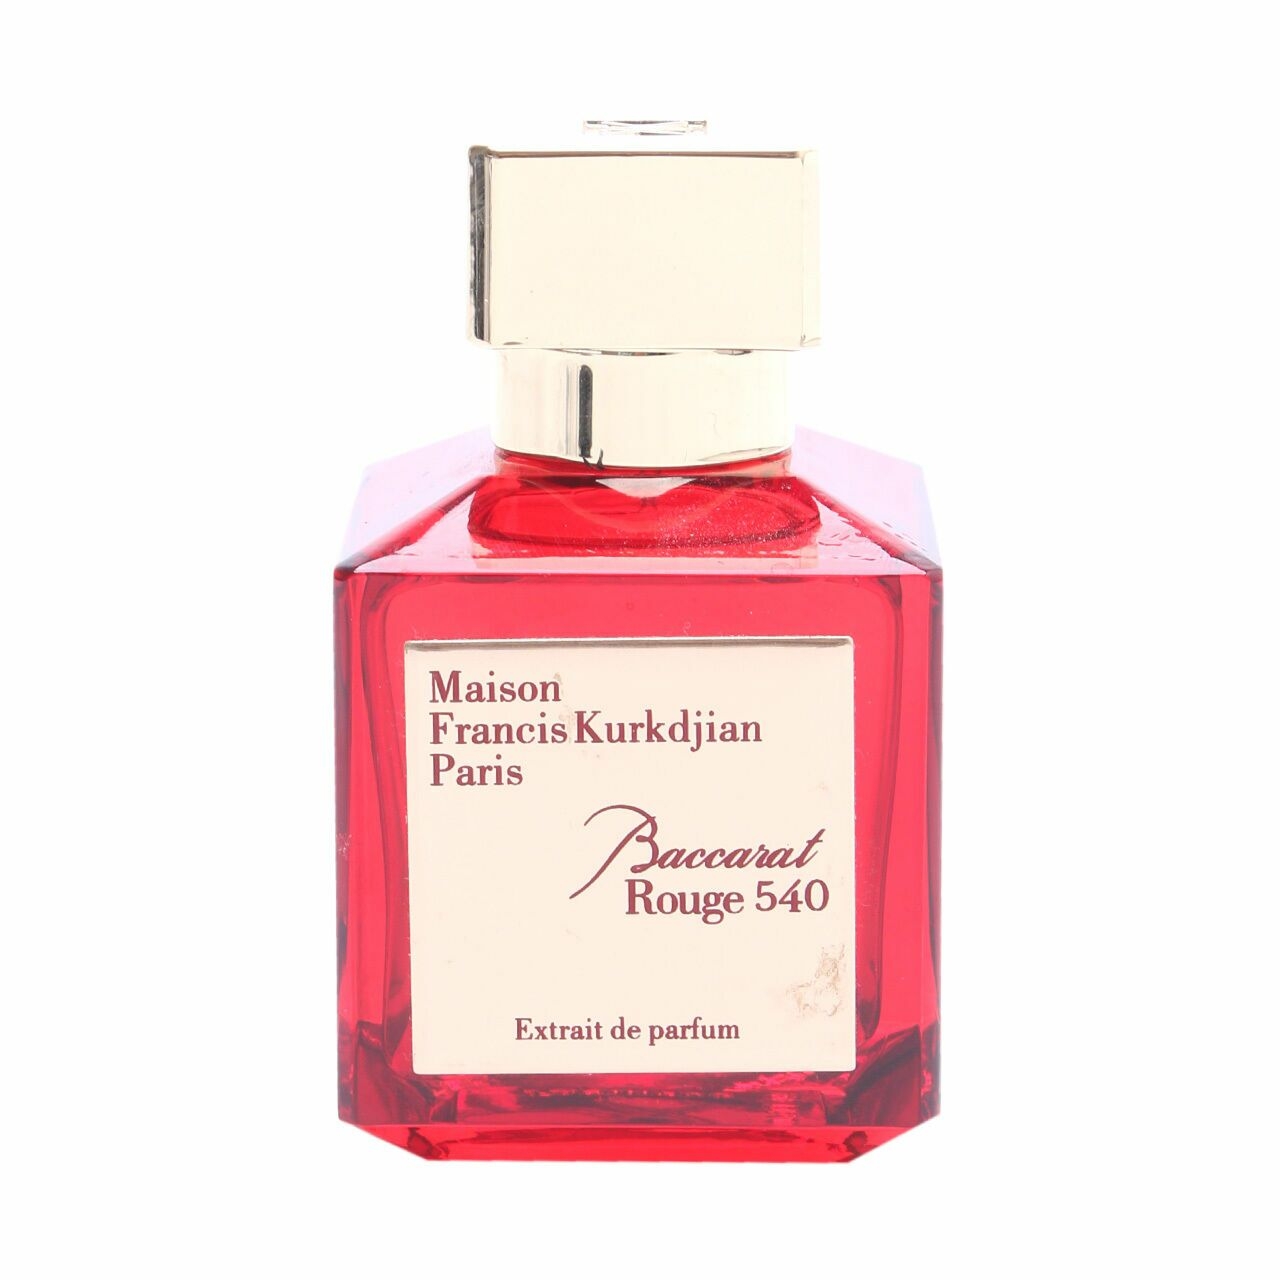 Baccarat Maison Francis Kurkdjian Paris Rouge 540 Extrait De Parfum Fragrance